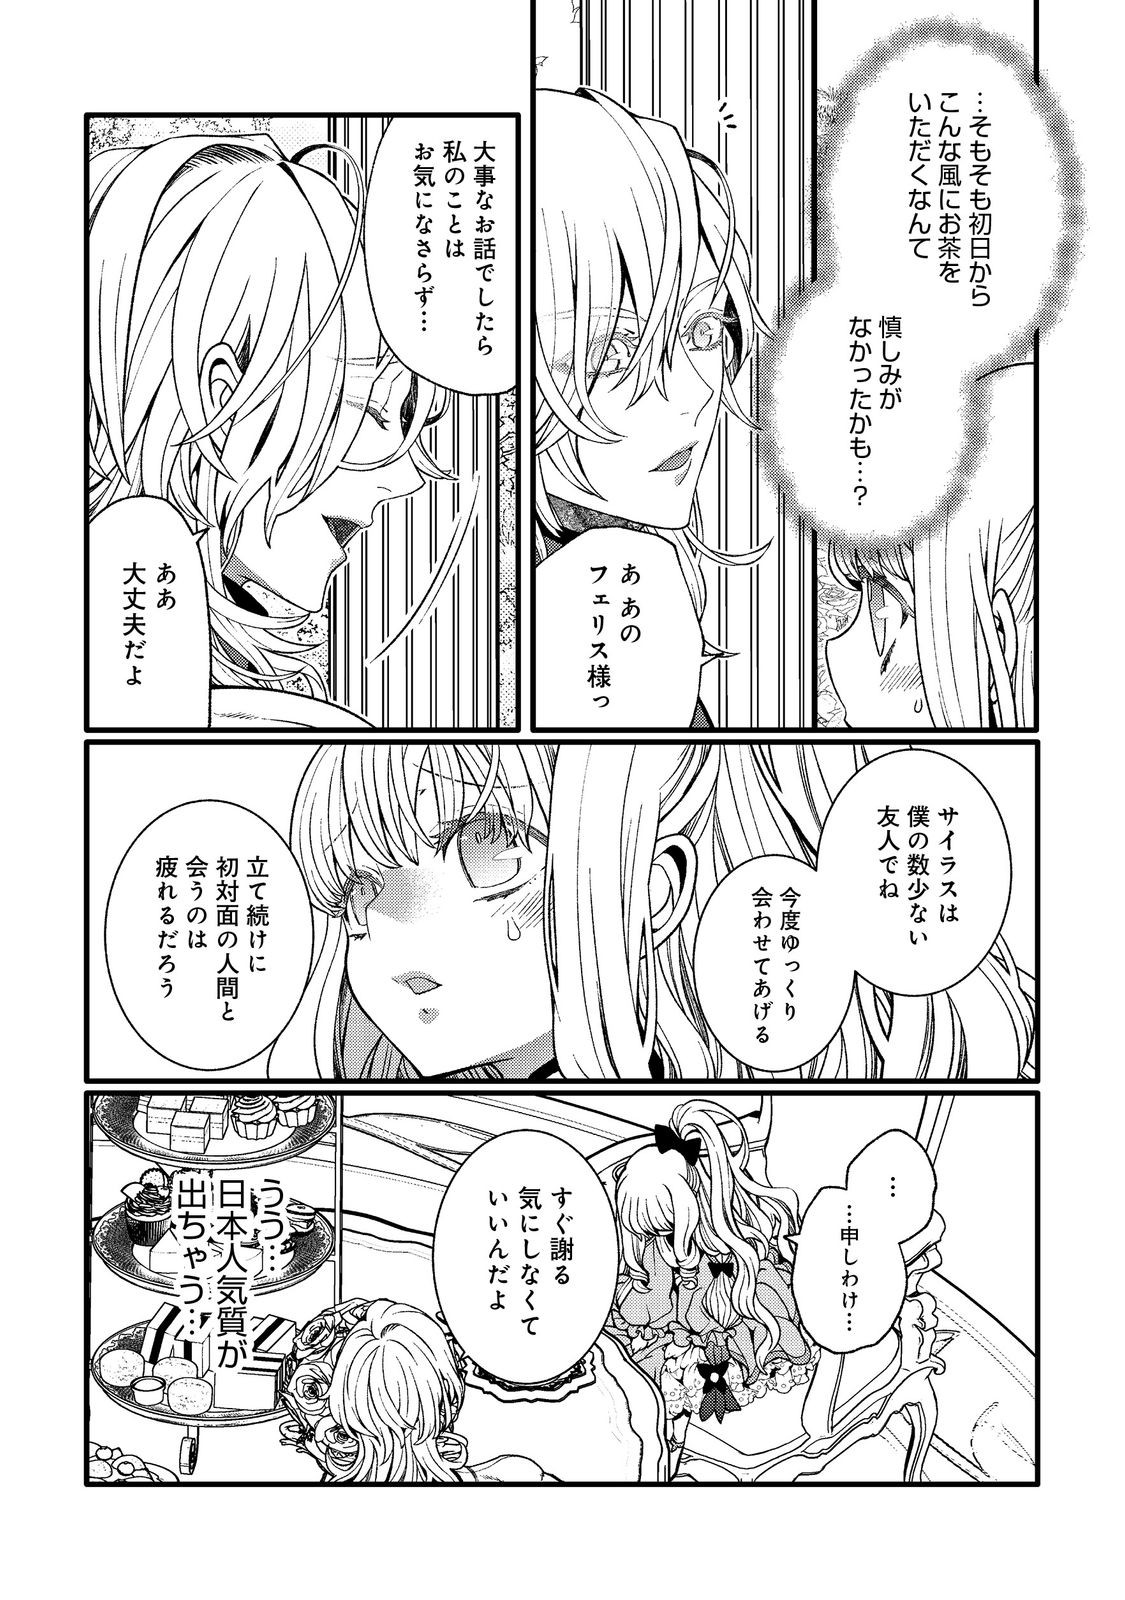 5-sai de, Ryuu no Ou Otoutou Denka no Hanayoume ni Narimashita - Chapter 2.2 - Page 2